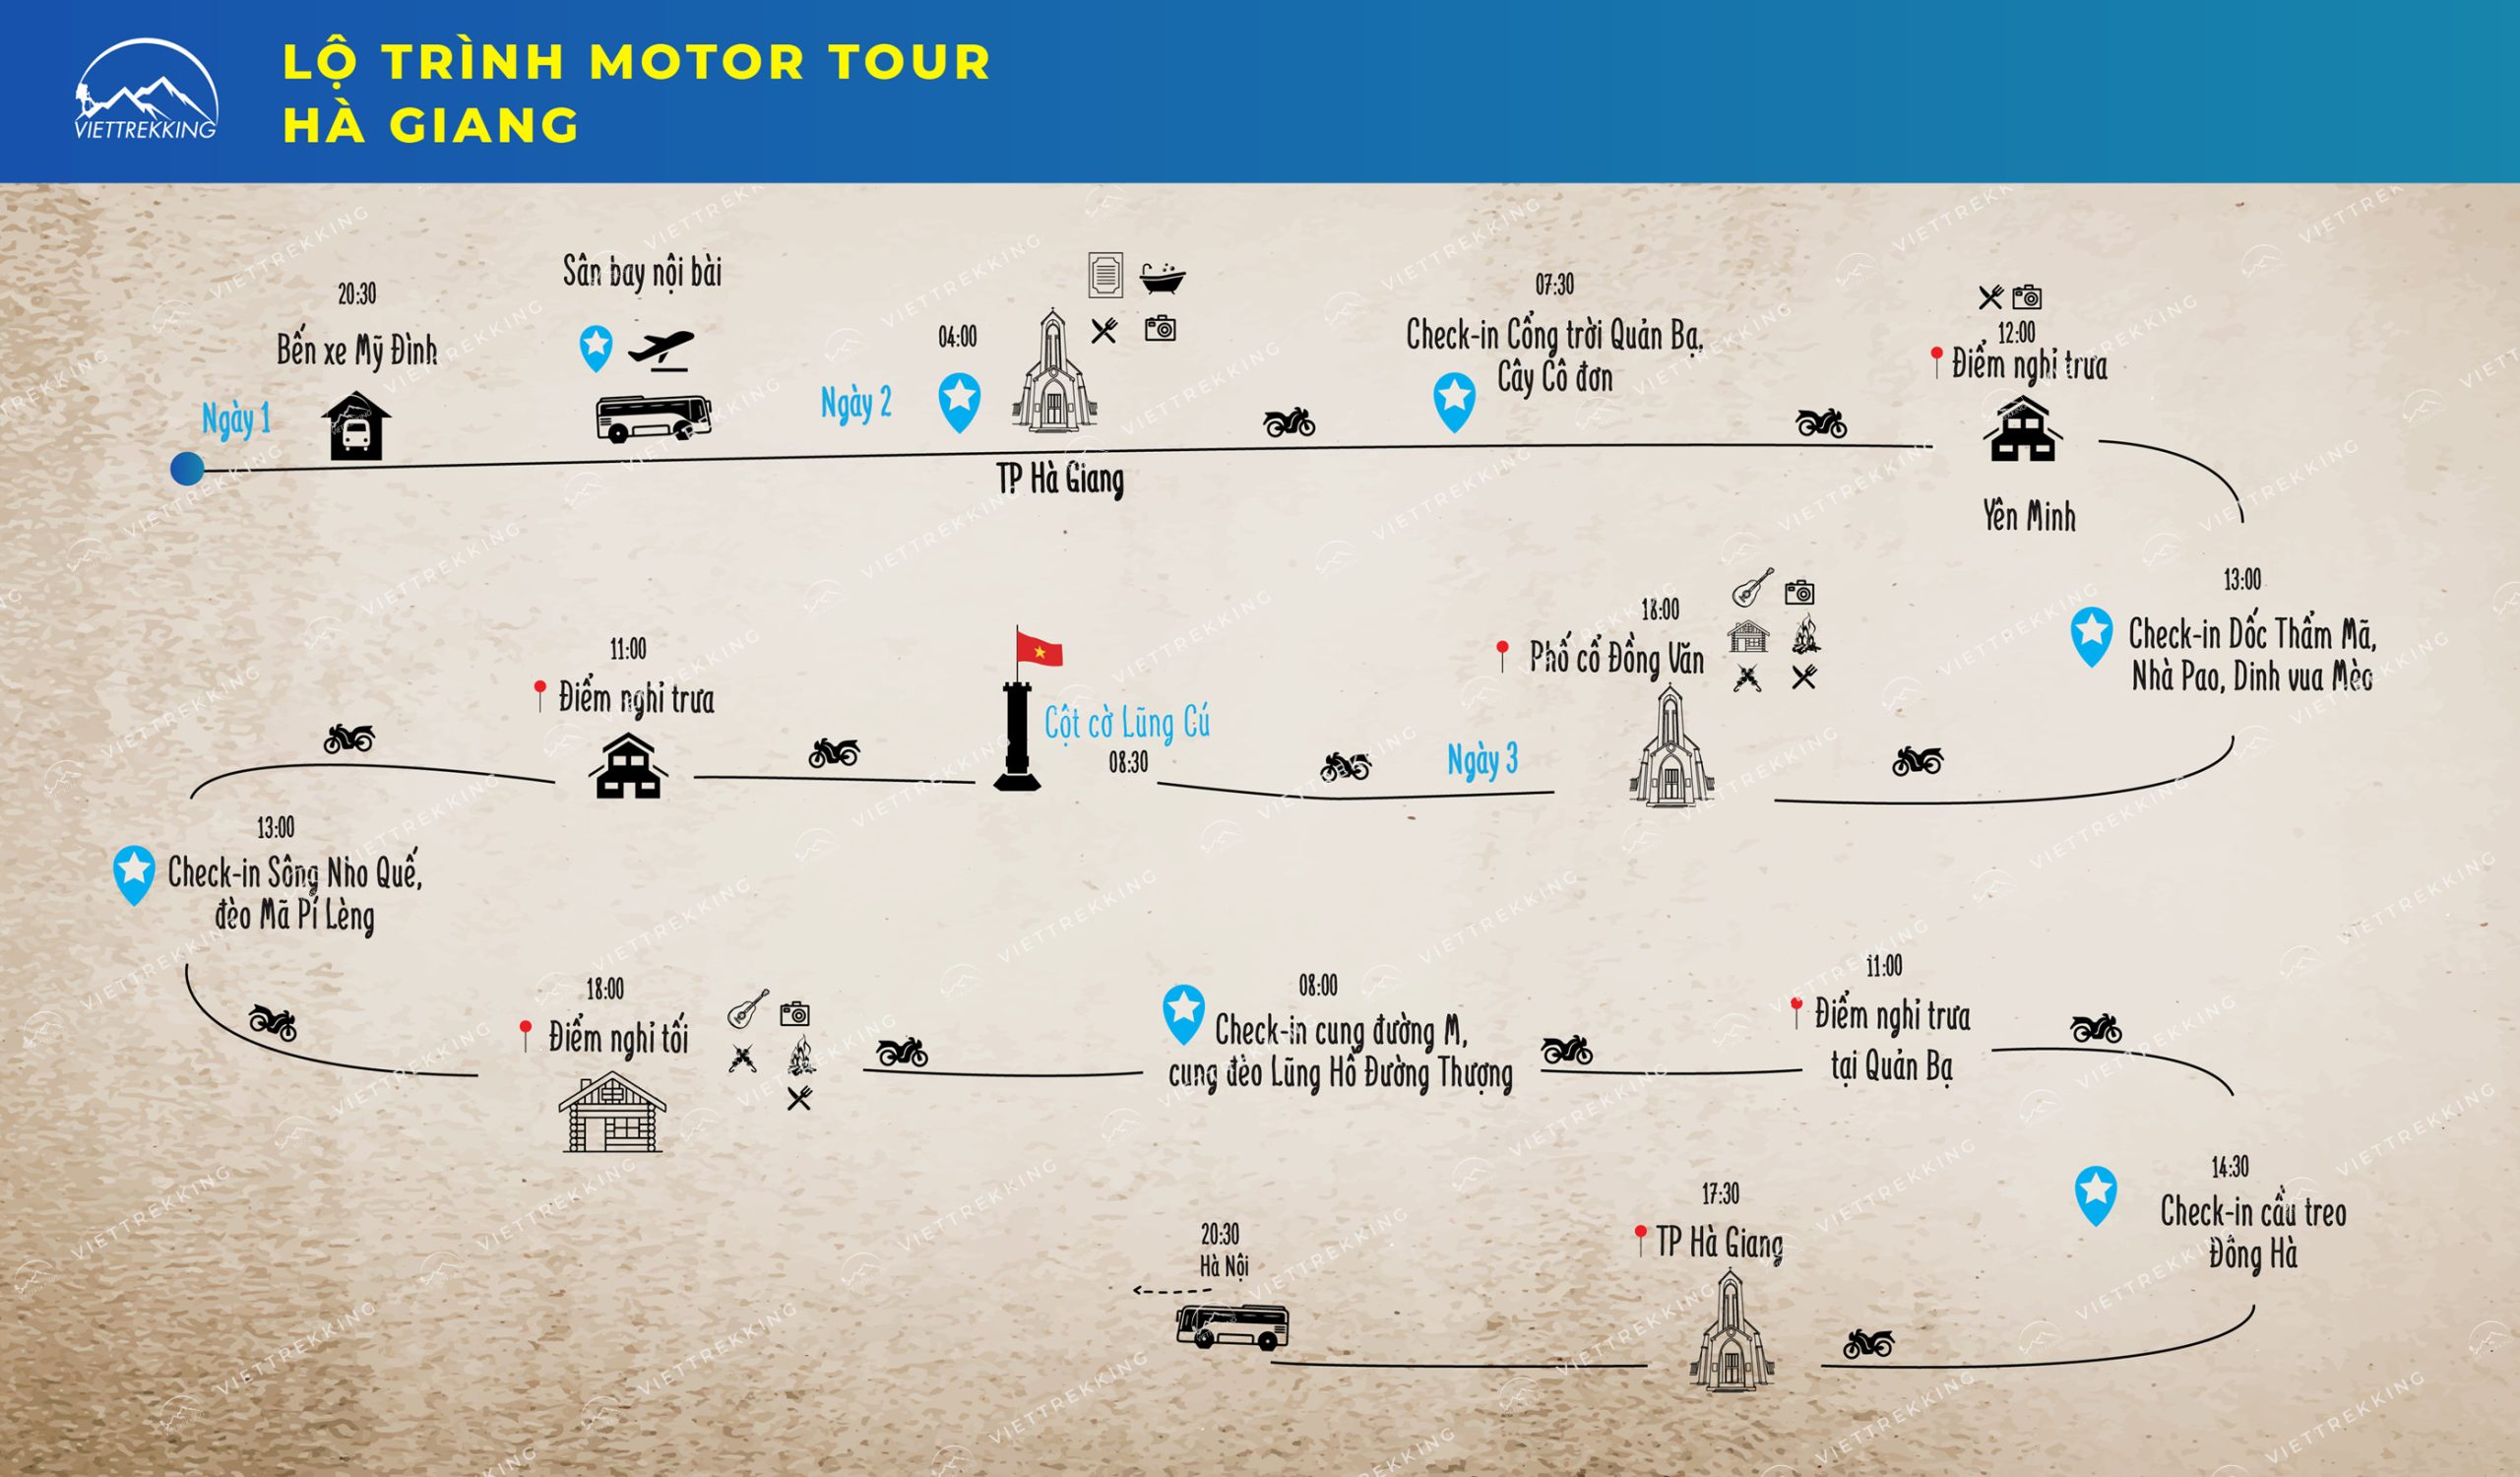 Lộ trình motor tour Hà Giang - Viettrekking